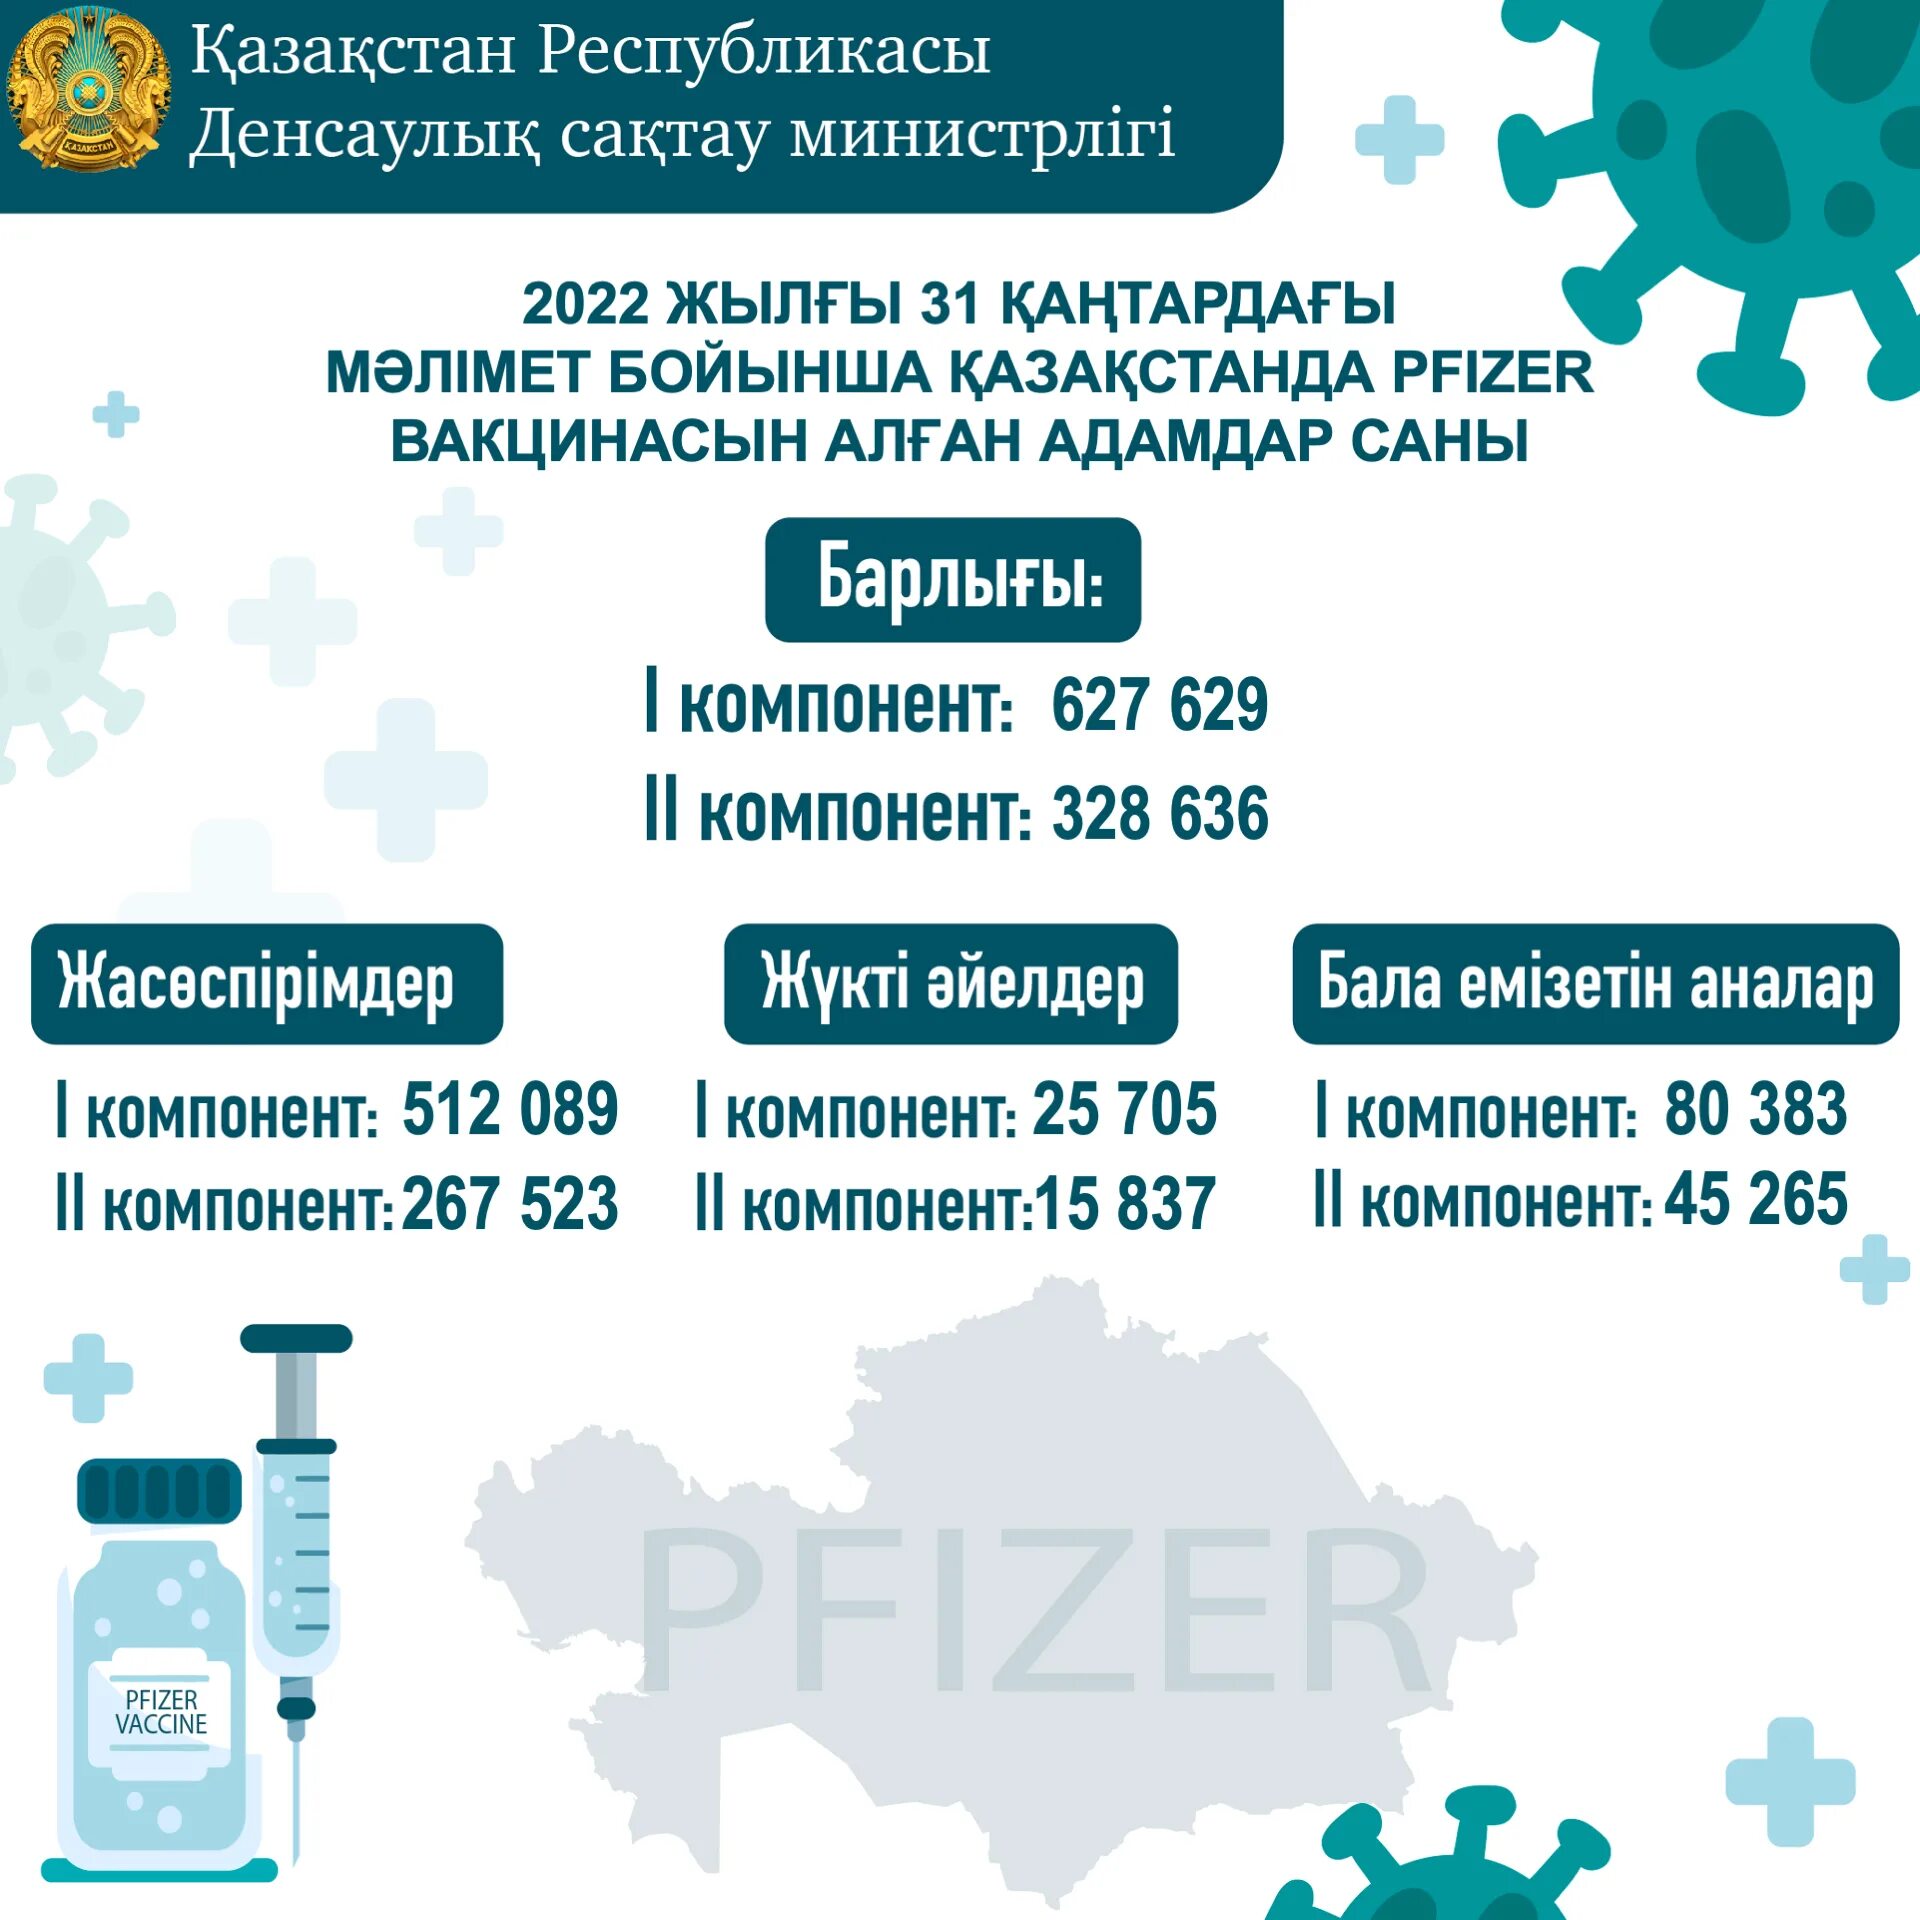 Вакцины Пфайзер в Казахстане 2022. Минздрав вакцинация. Вакцины в год. Количество людей вакцинированных Pfizer. Вакцина 2022